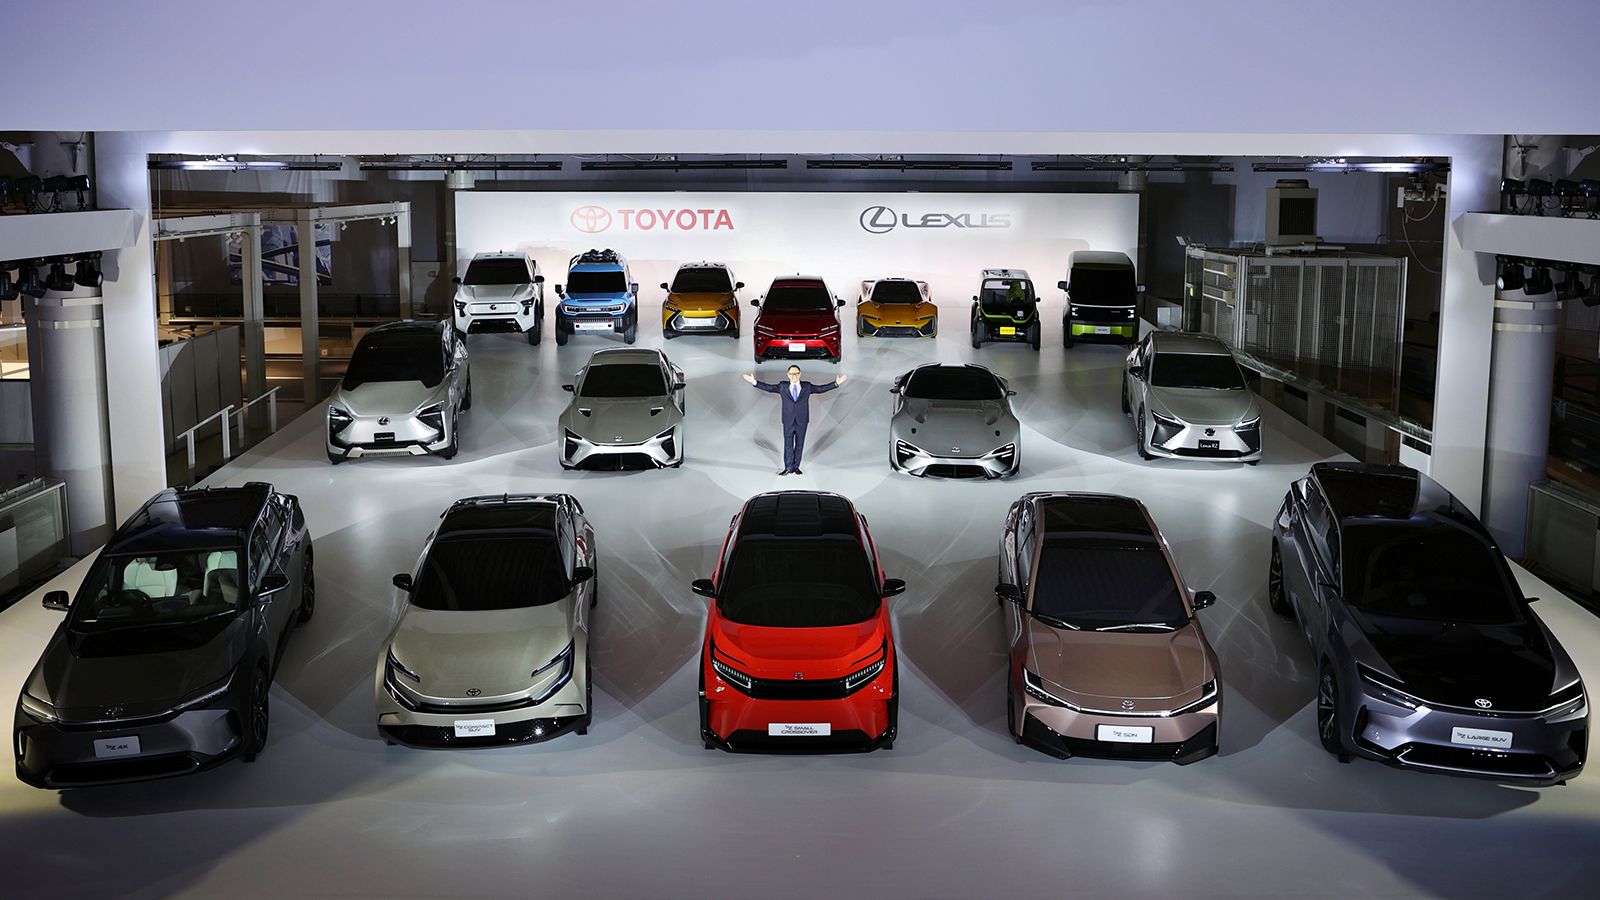 Όλα τα ηλεκτρικά πρωτότυπα οχήματα του ομίλου Toyota σε παράταξη.